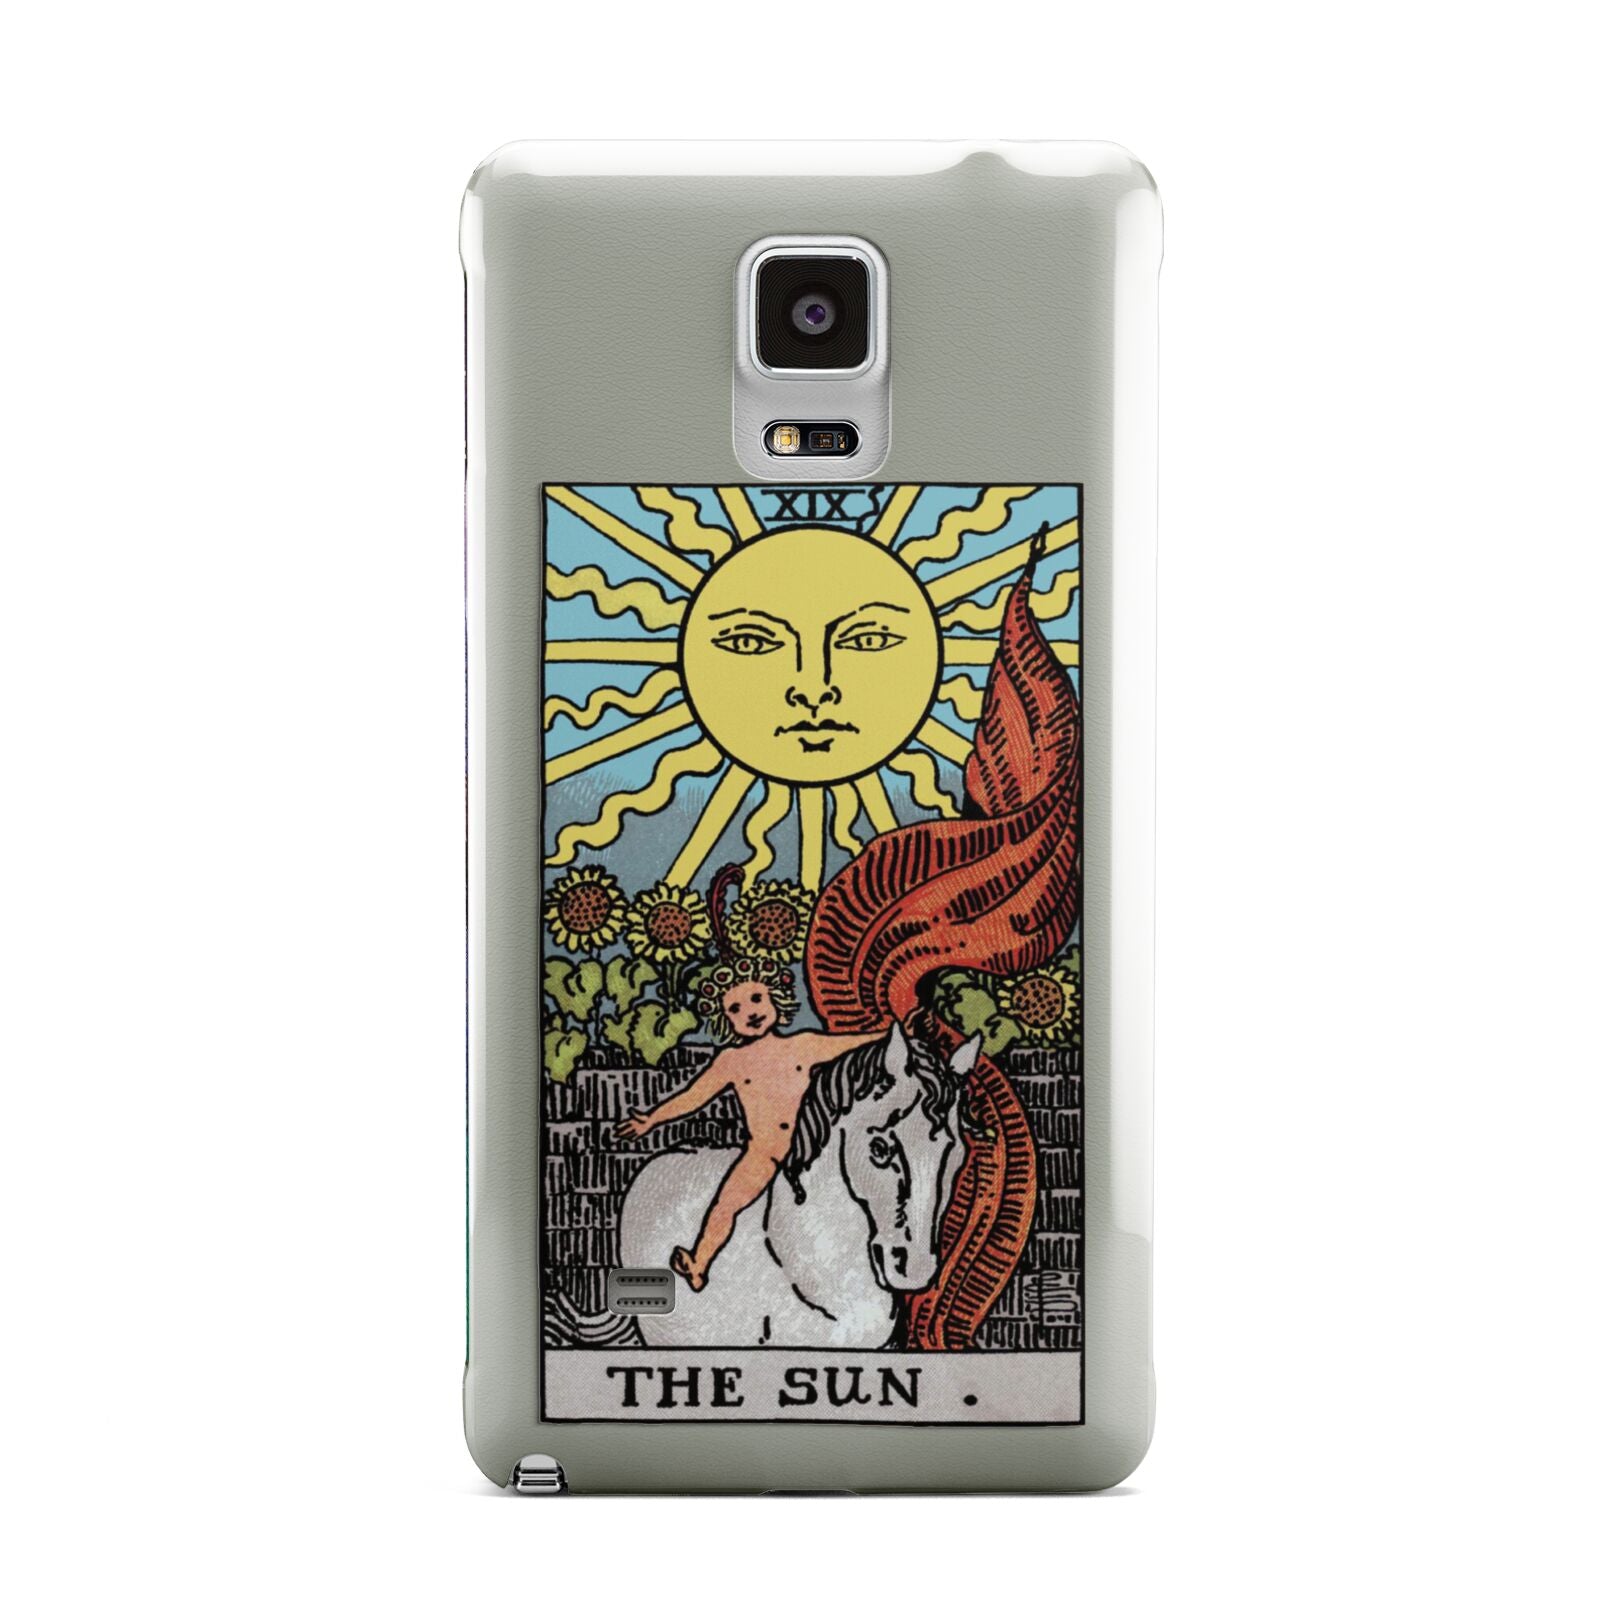 The Sun Tarot Card Samsung Galaxy Note 4 Case